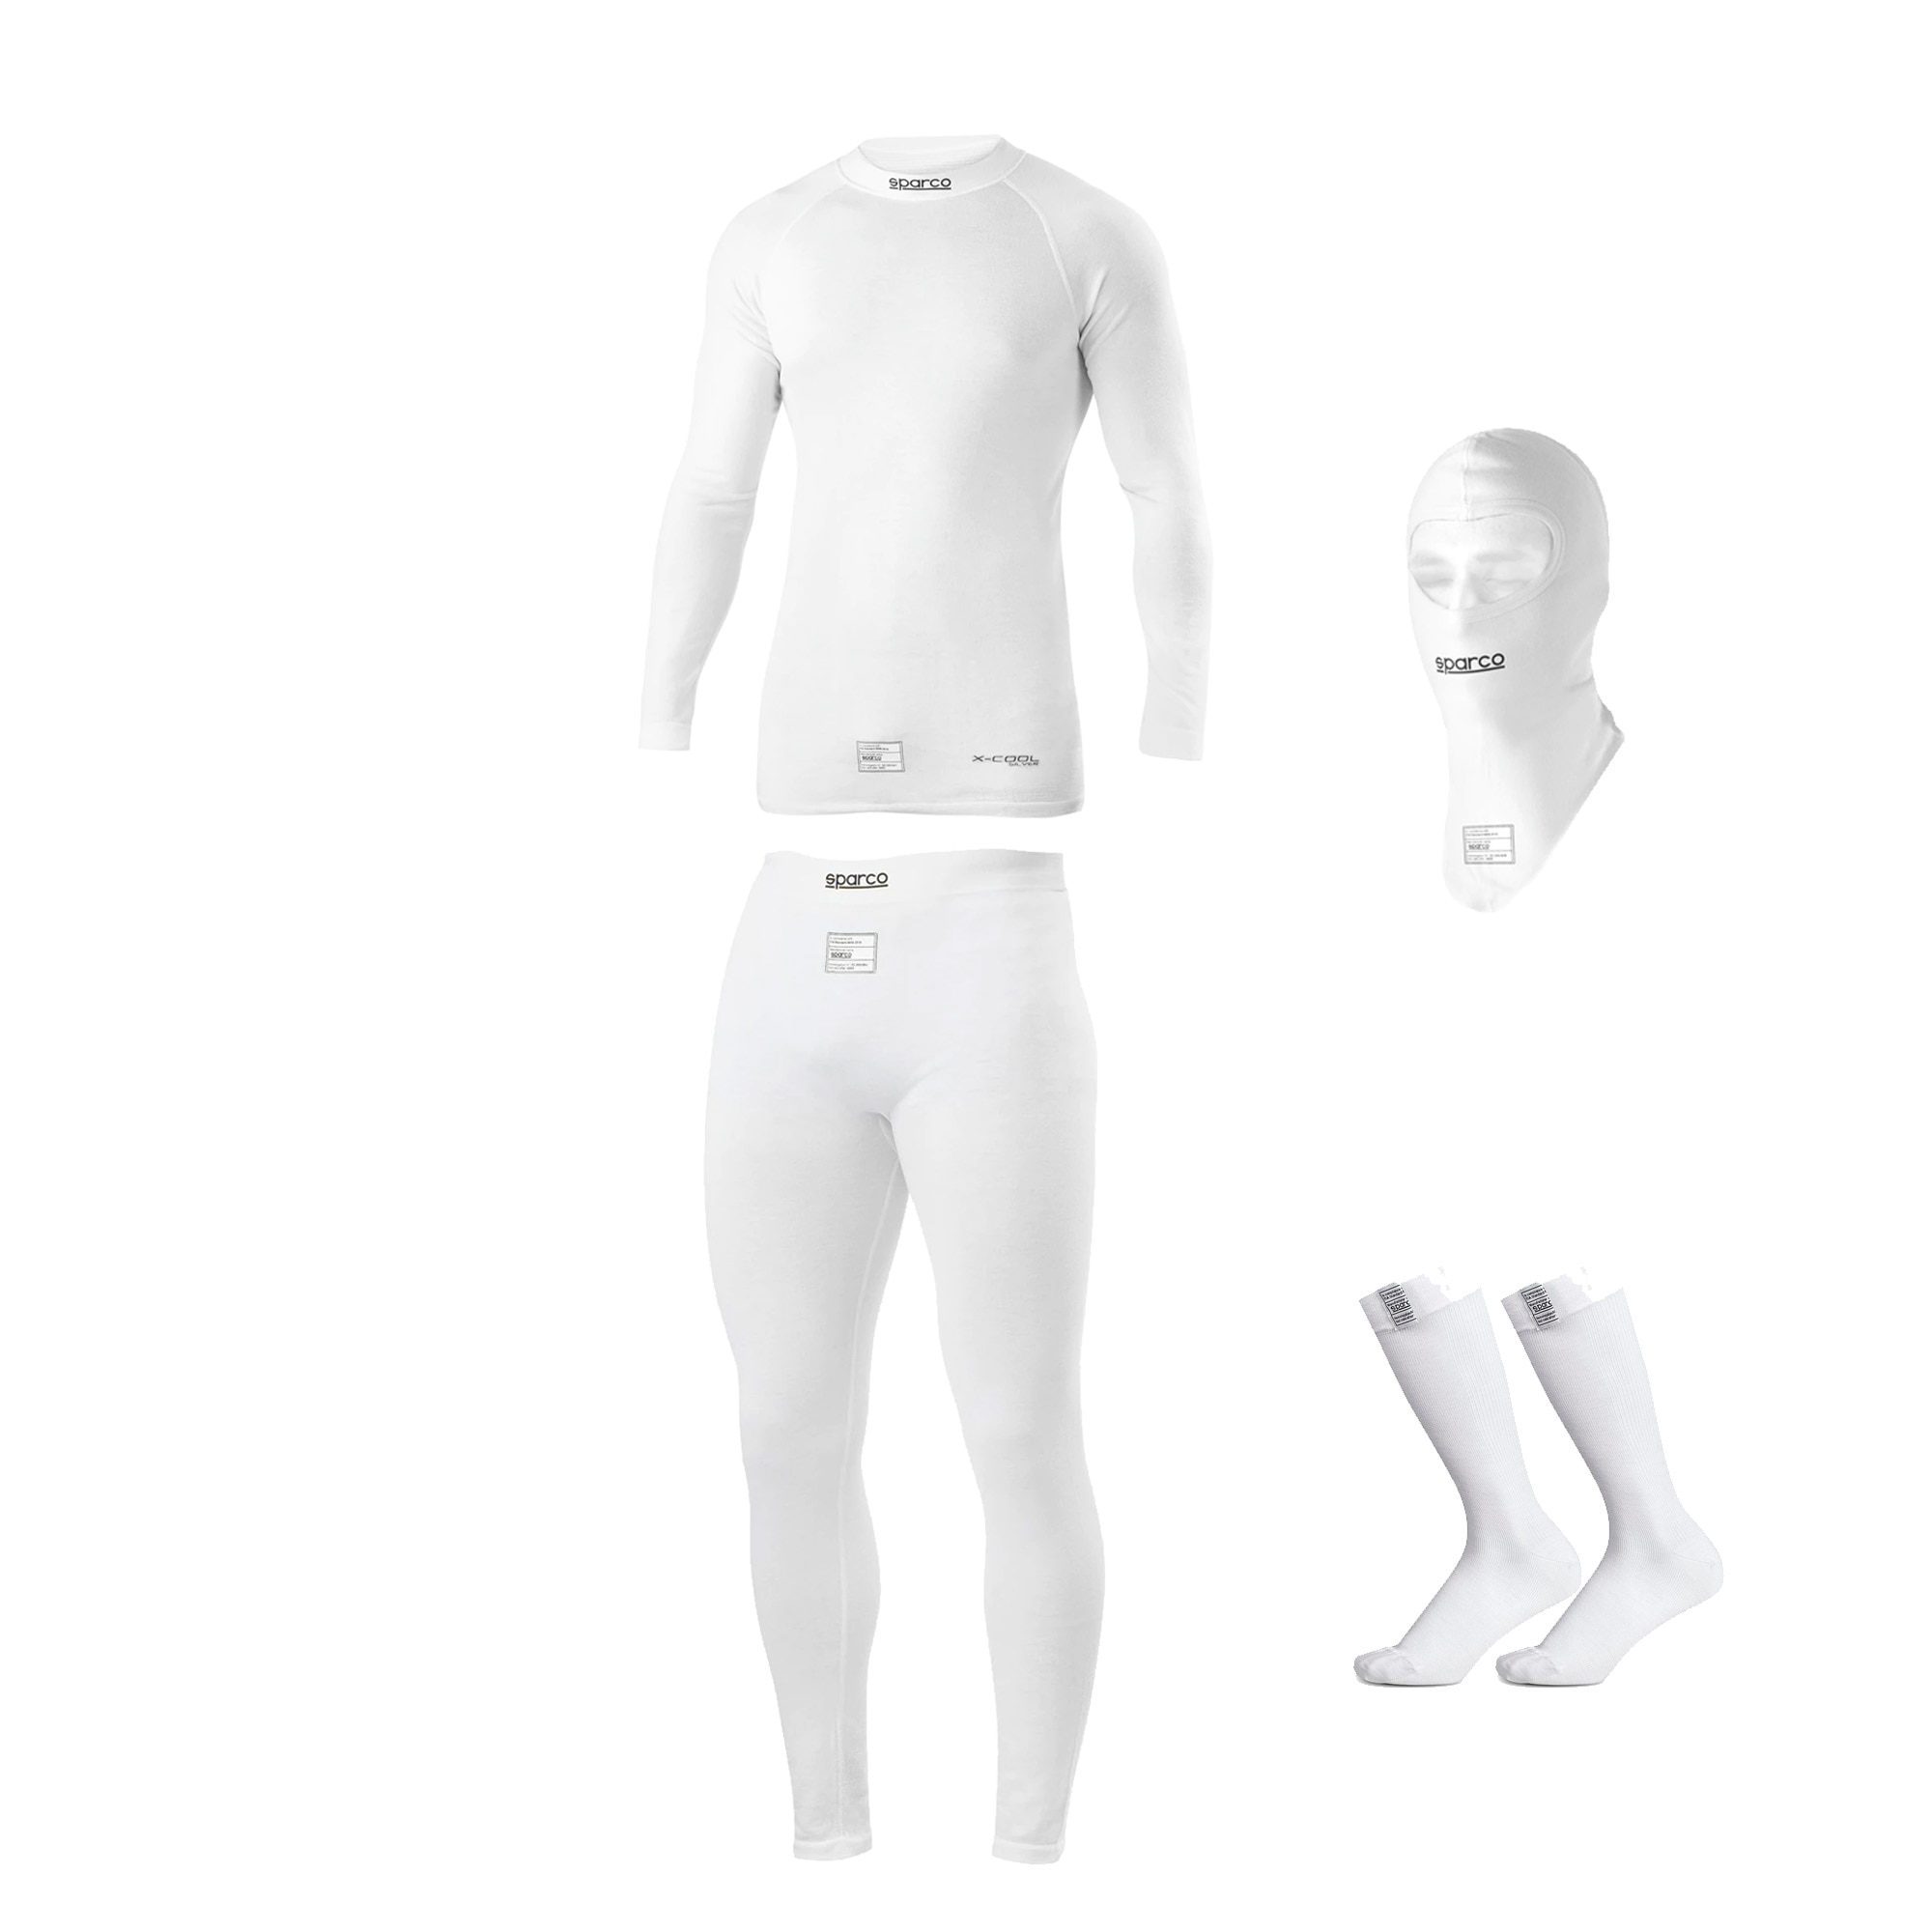 Racing underwear kit Sparco RW-7 White